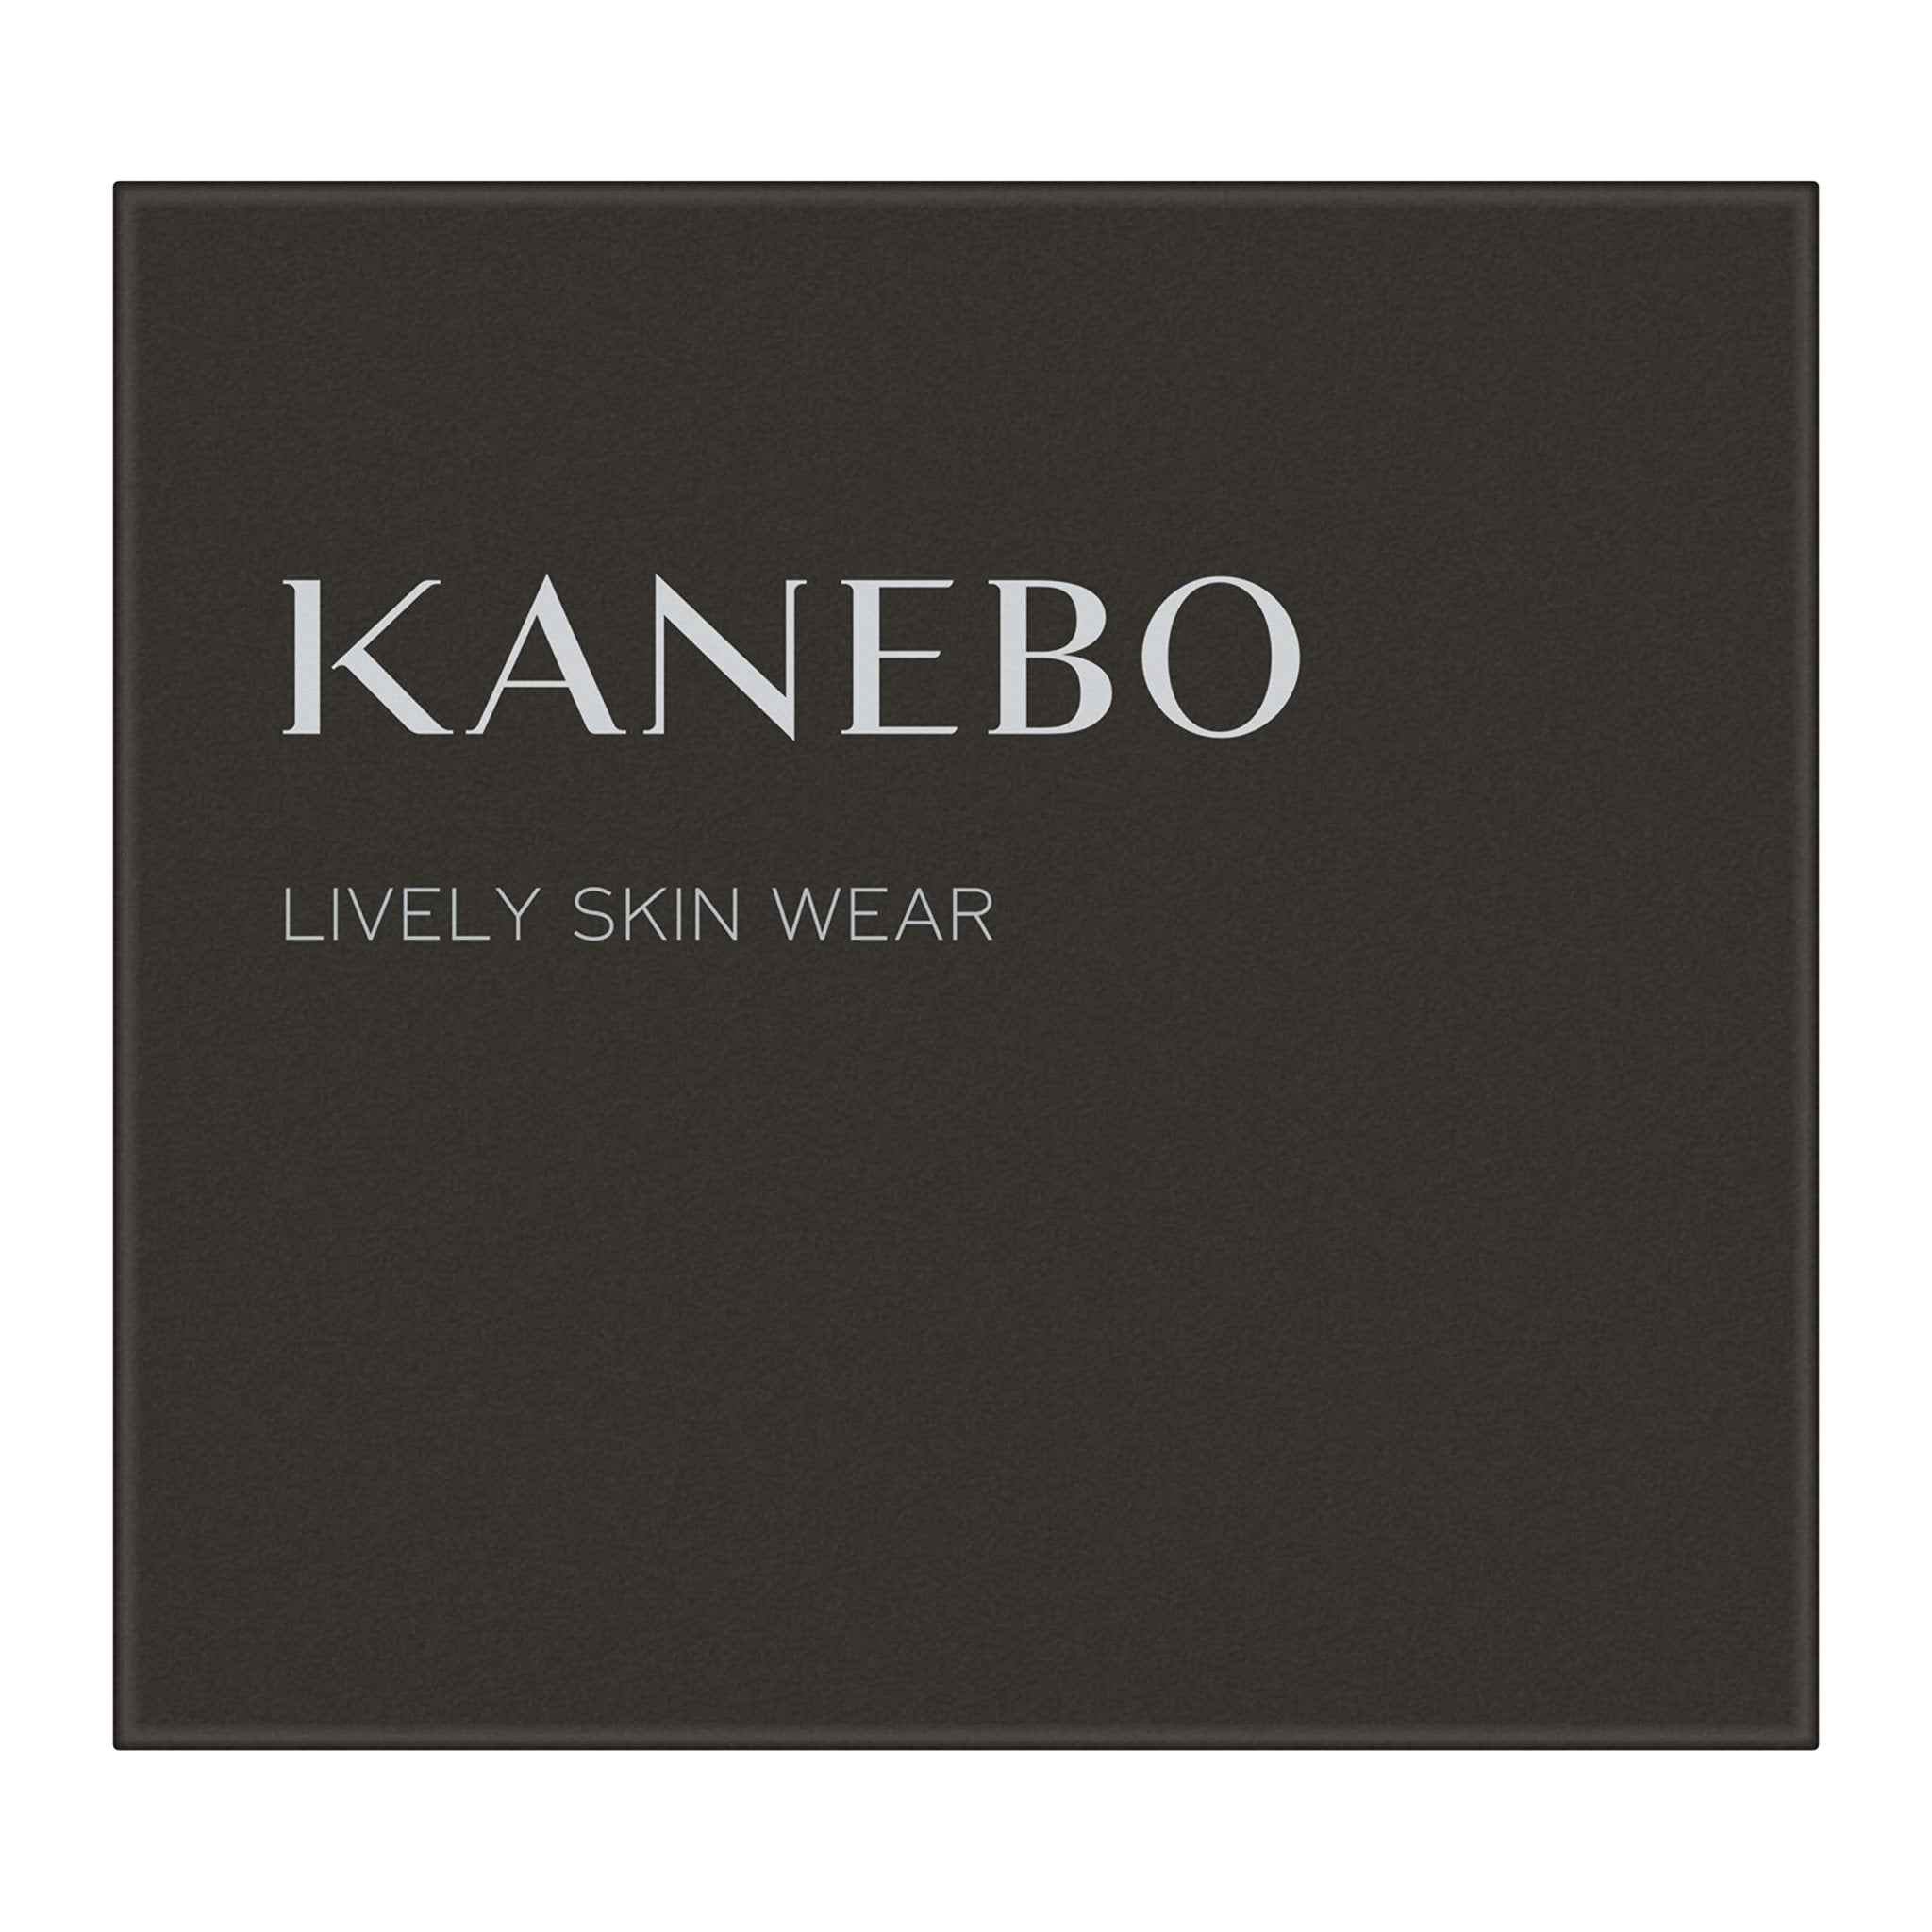 Kanebo Lively Skin Wear in Ocher C - 1 Piece